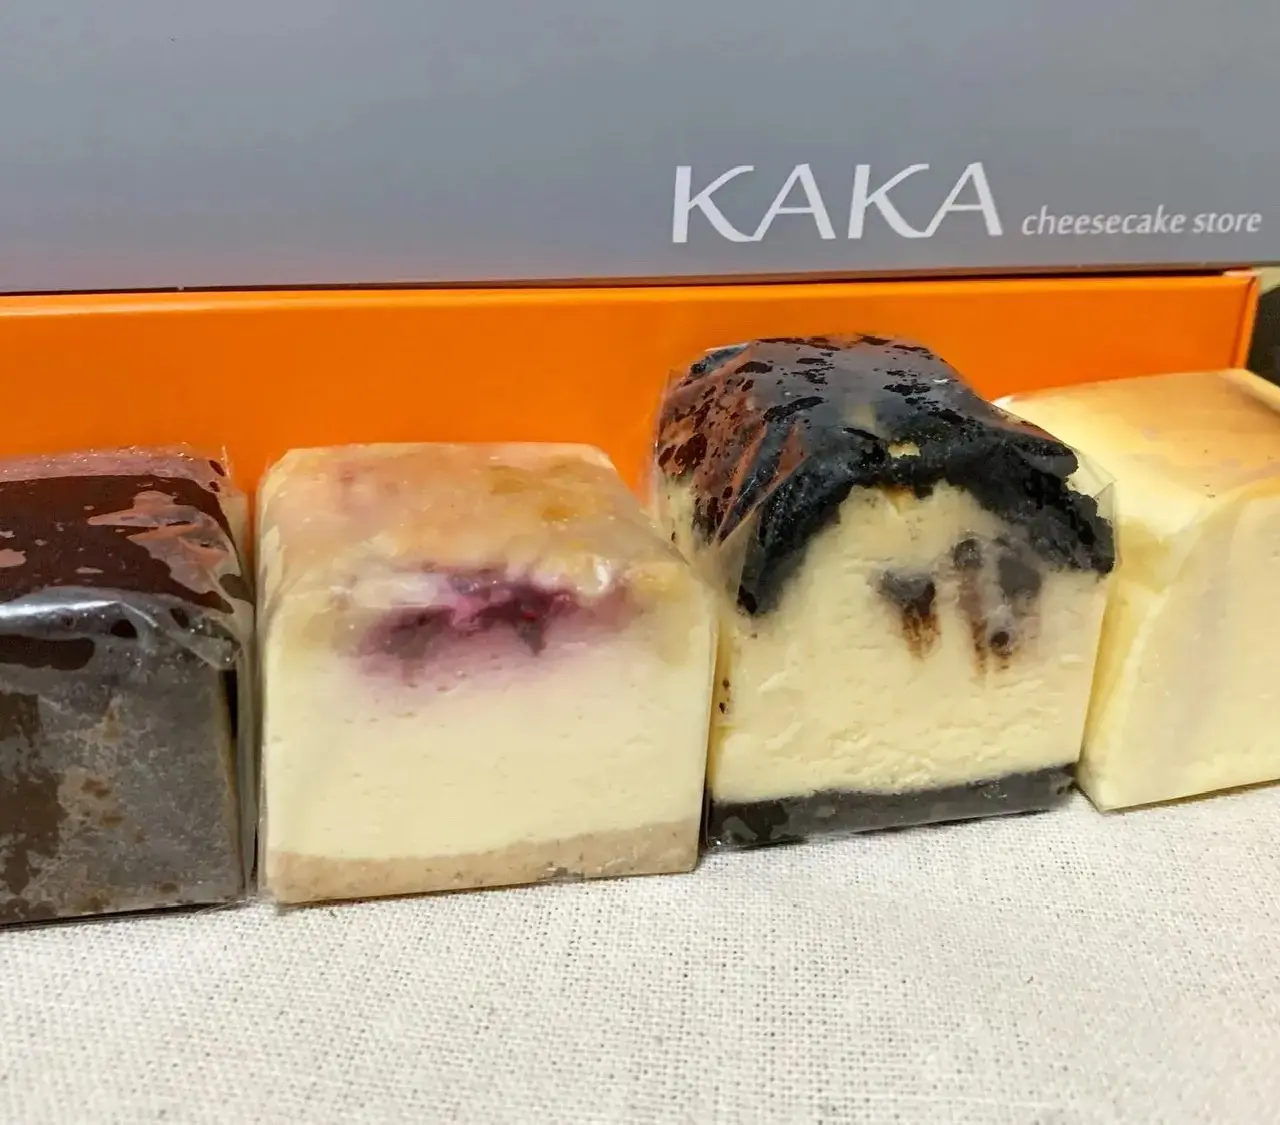 おすすめお取り寄せ 福岡のチーズケーキ専門店 Kaka 東京ディズニーリゾート アプリ でお土産 ゲット 今週のmoreインフルエンサーズライフスタイル人気ランキング ライフスタイル最新情報 Daily More